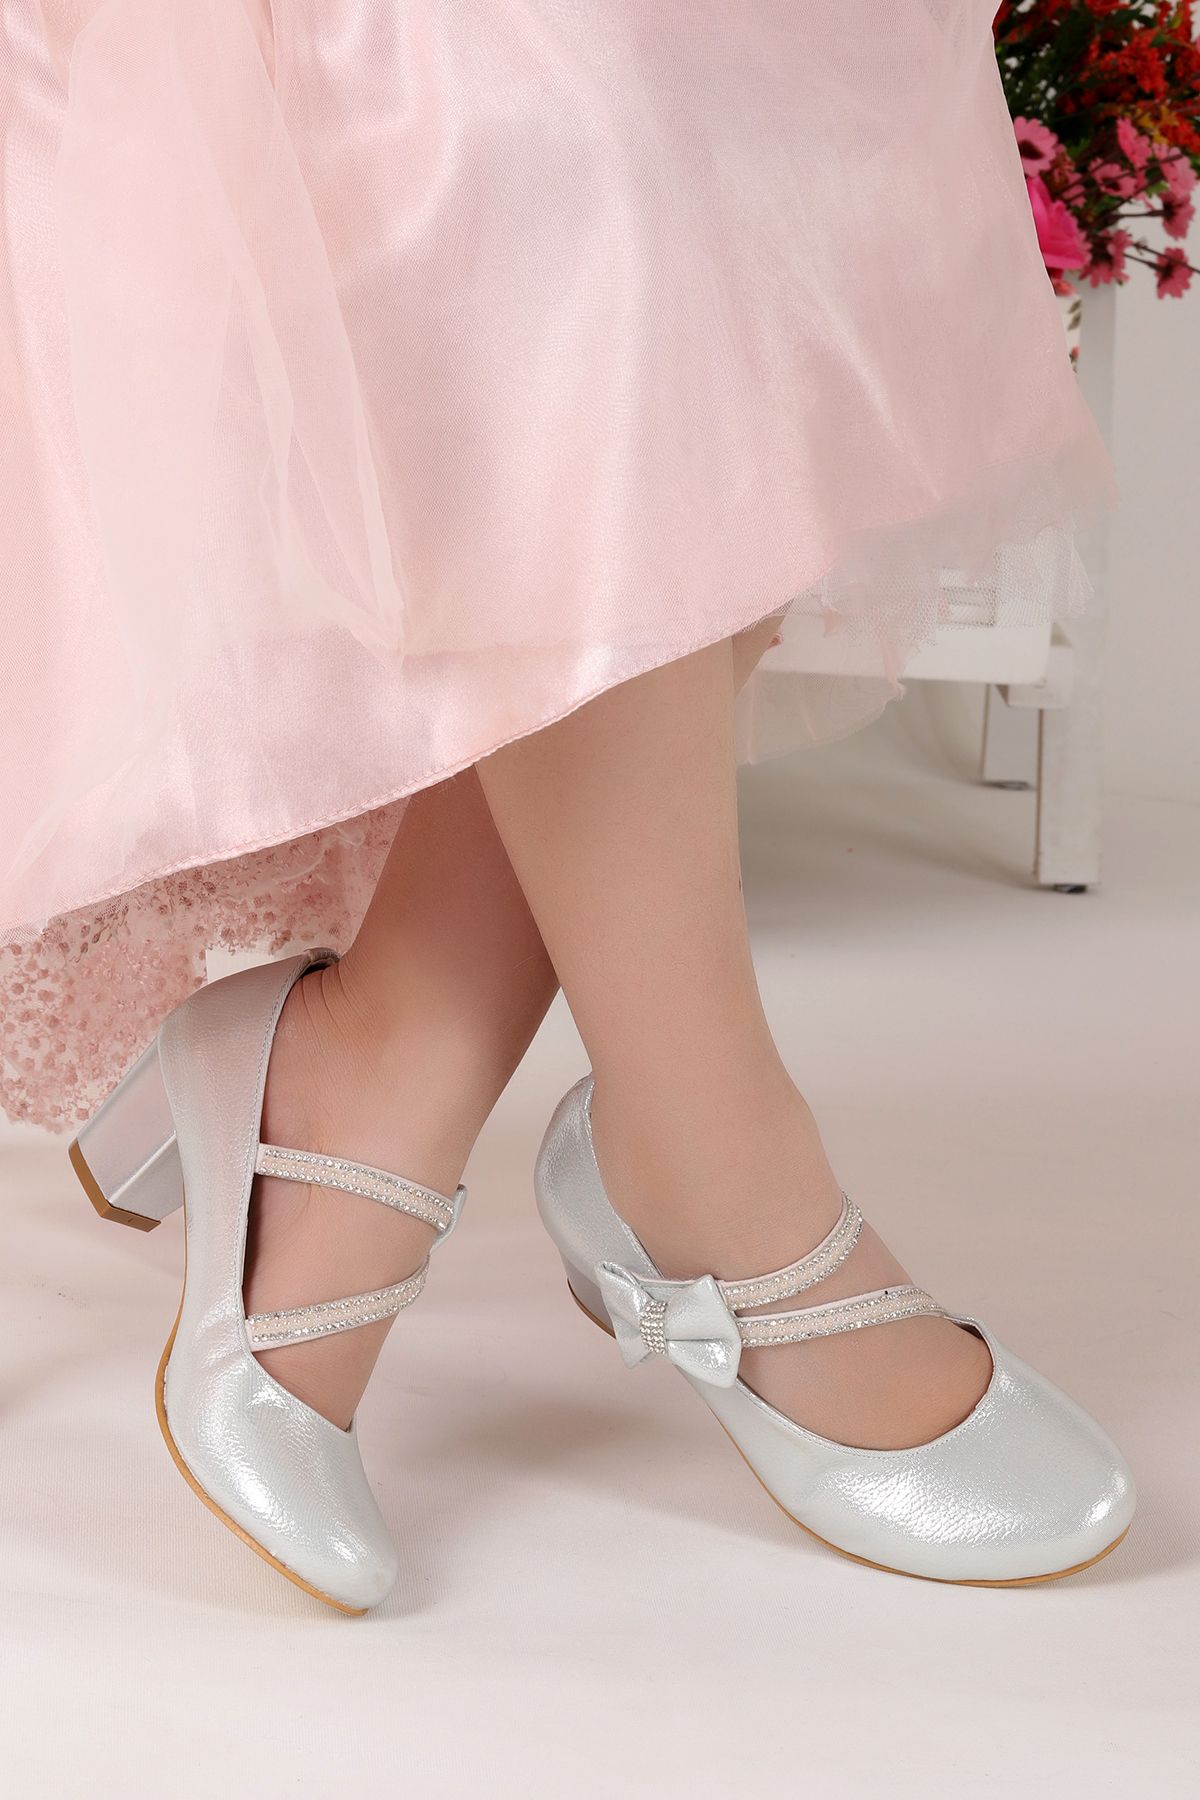 Kiko Kids Kız Çocuk Gümüş Renk Kiko 750 Günlük  4 cm Topuk Babet Ayakkabı